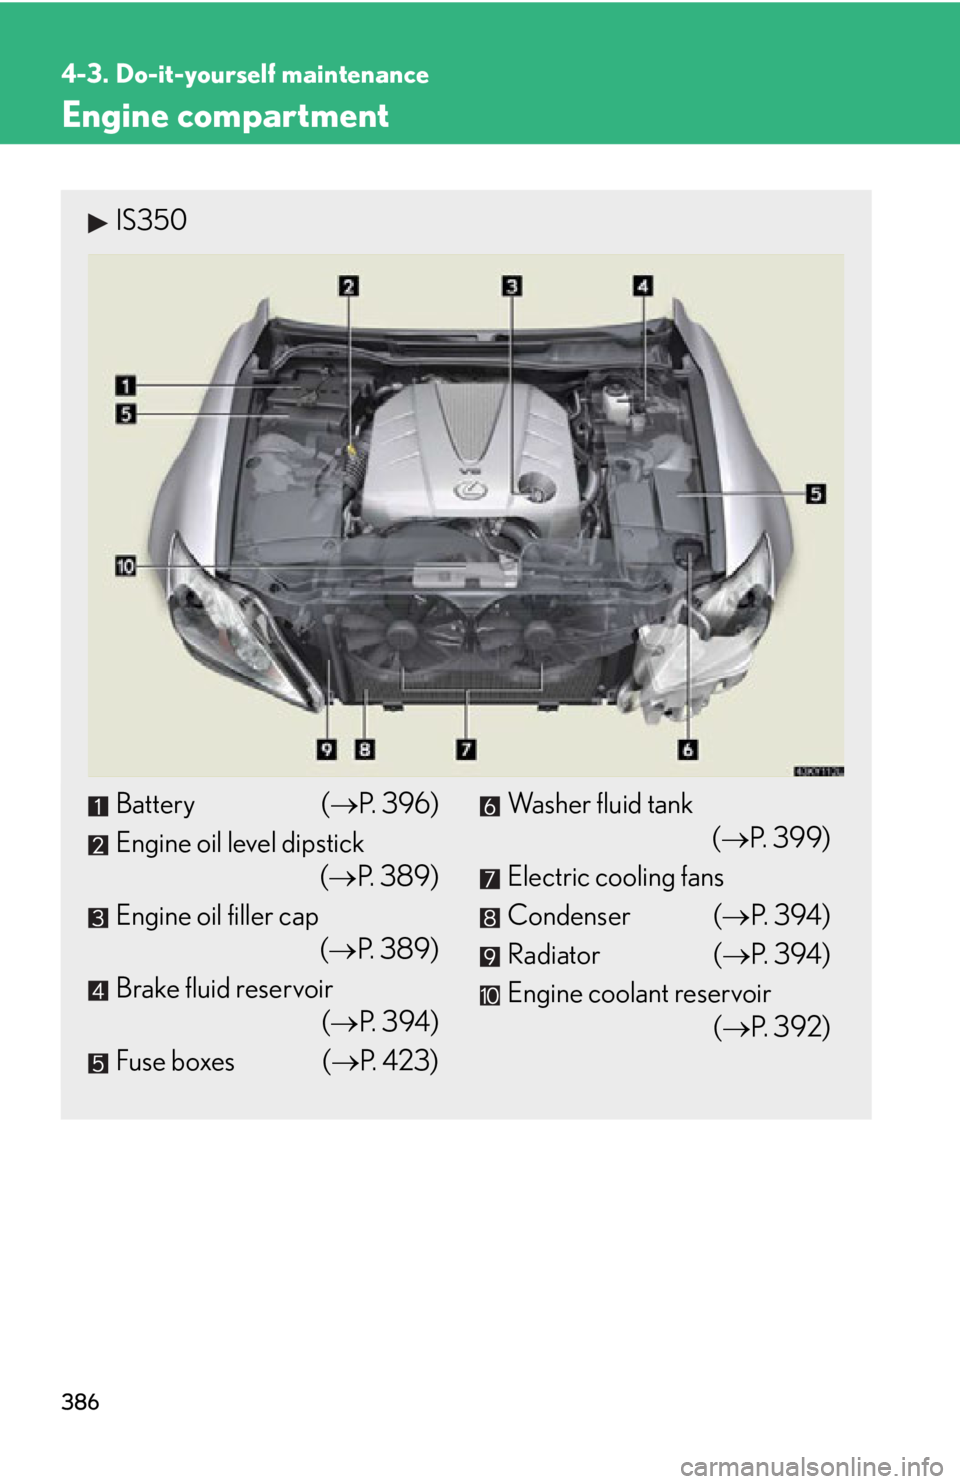 Lexus IS250 2011  Do-It-Yourself Maintenance / LEXUS 2011 IS250/IS350 OWNERS MANUAL (OM53839U) 386
4-3. Do-it-yourself maintenance
Engine compartment
IS350
Battery (P. 396)
Engine oil level dipstick (P. 389)
Engine oil filler cap (P. 389)
Brake fluid reservoir (P. 394)
Fuse boxes ( 